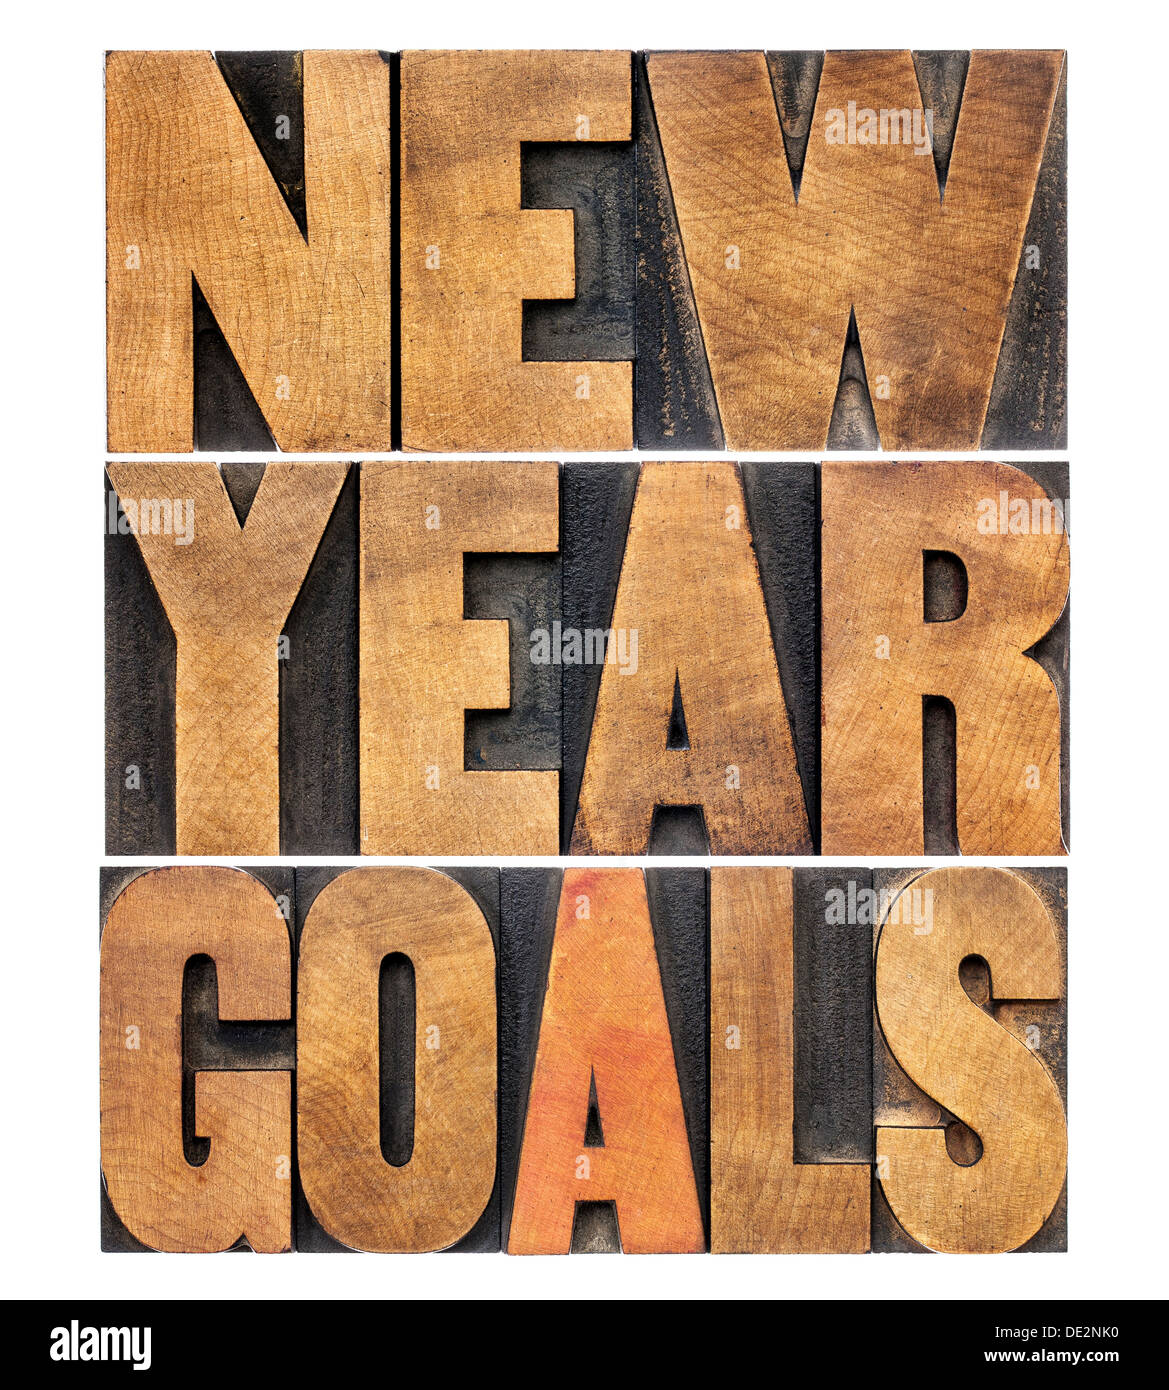 Objectifs de la nouvelle année - résolution concept - texte isolé en bois type letterpress Banque D'Images